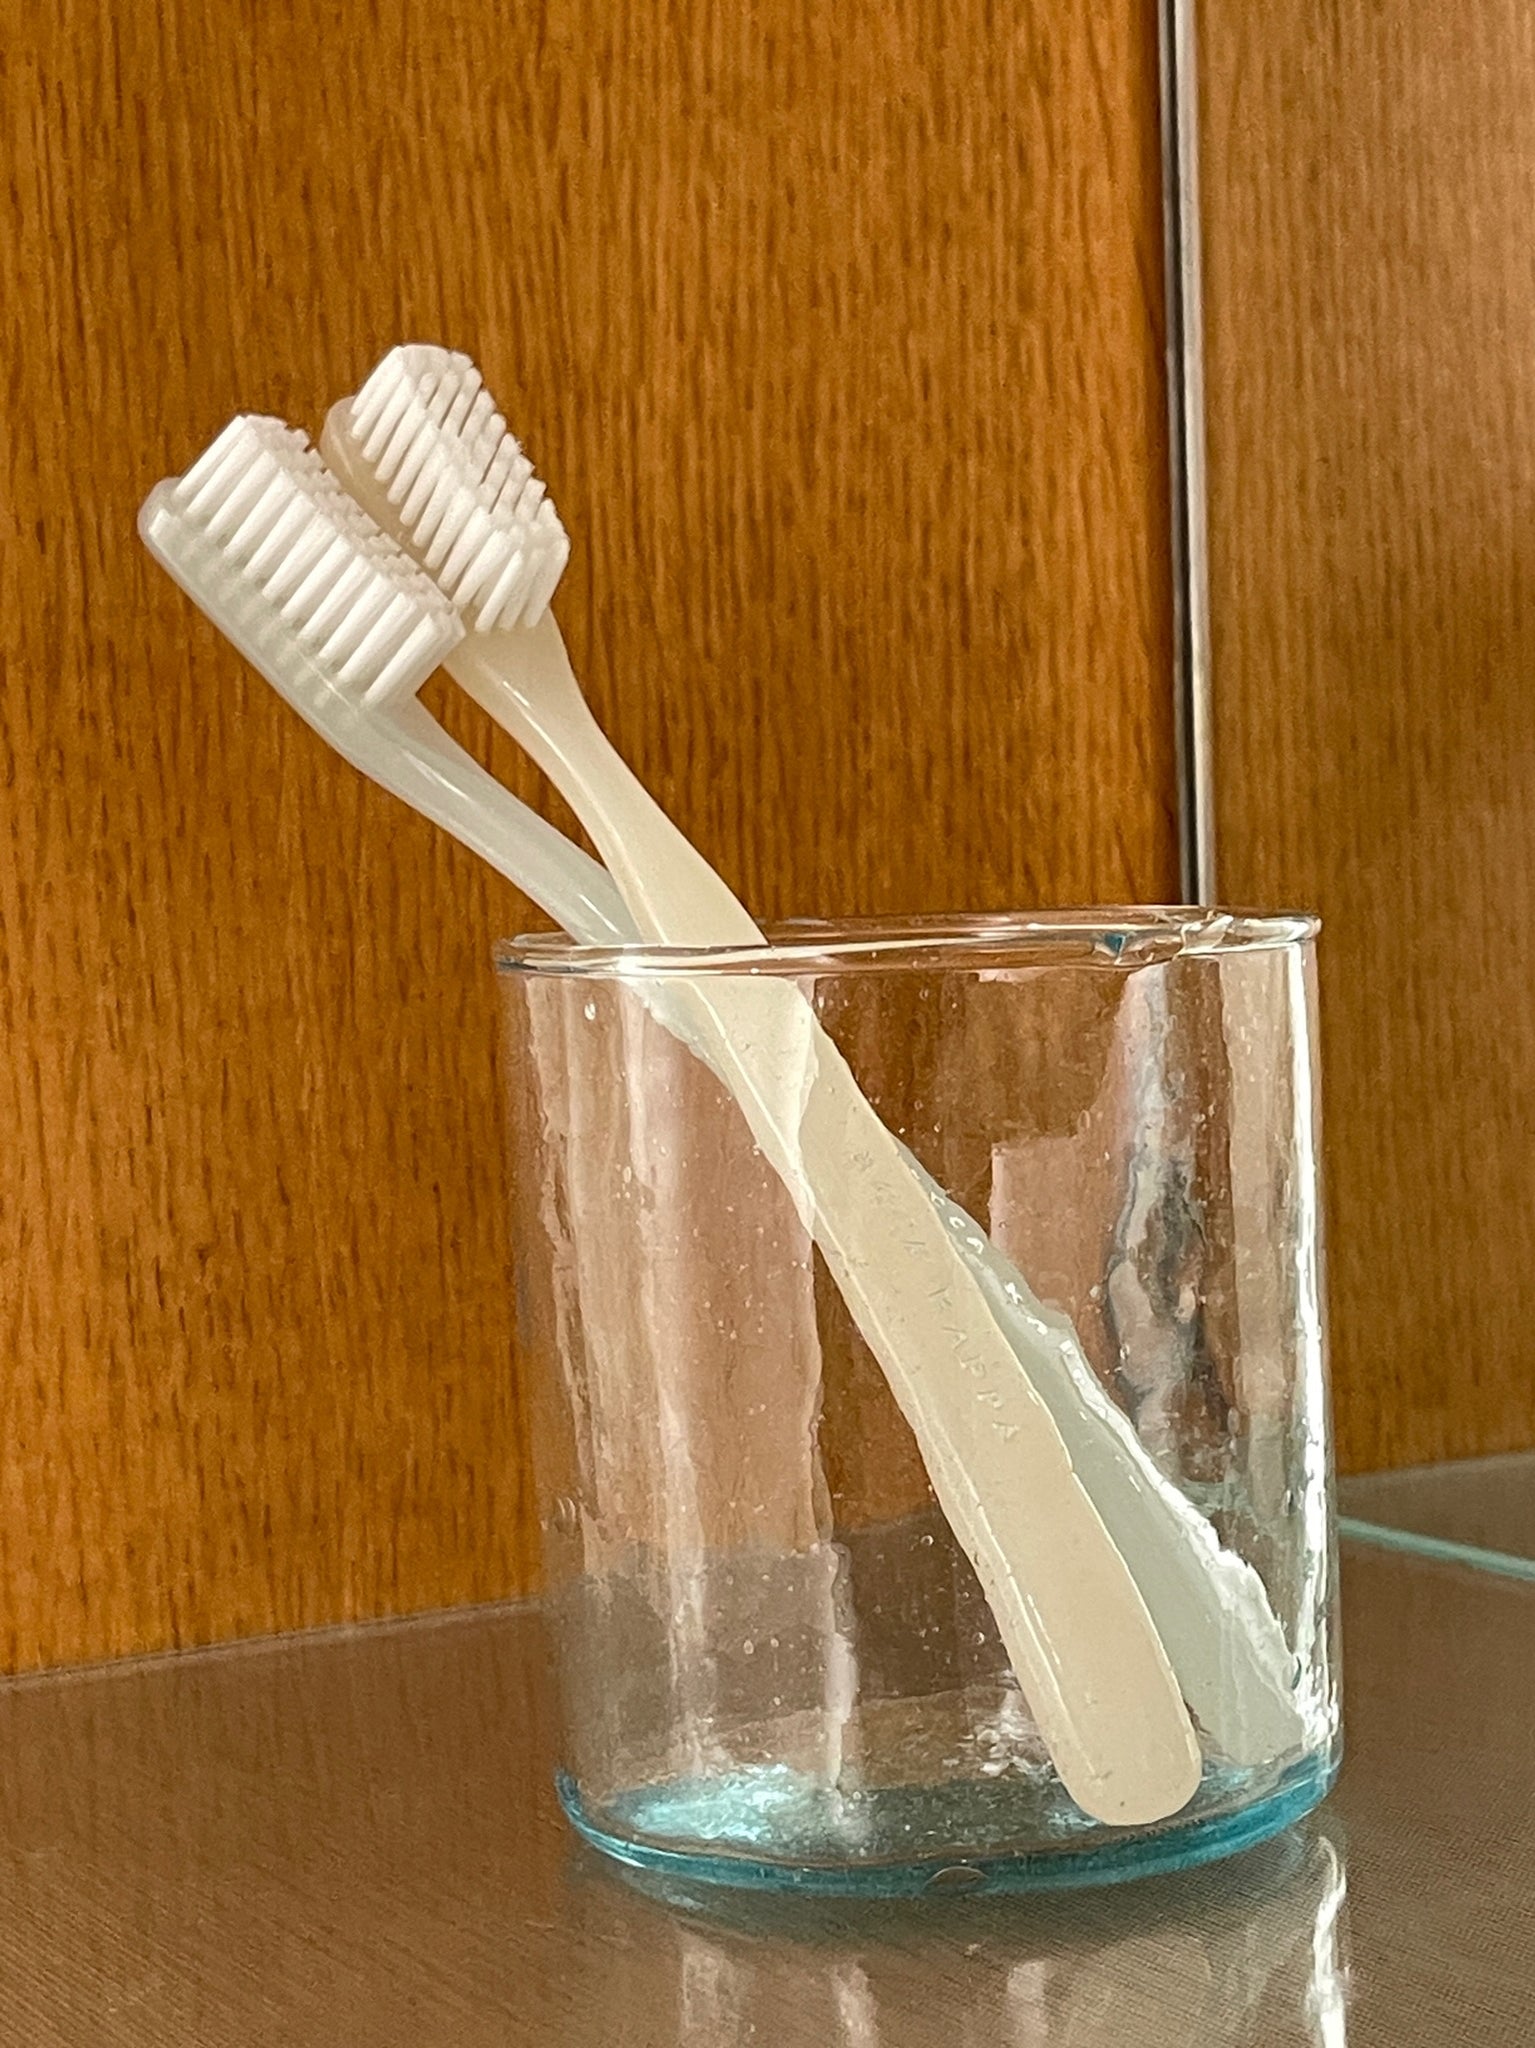 Toothbrush, Green